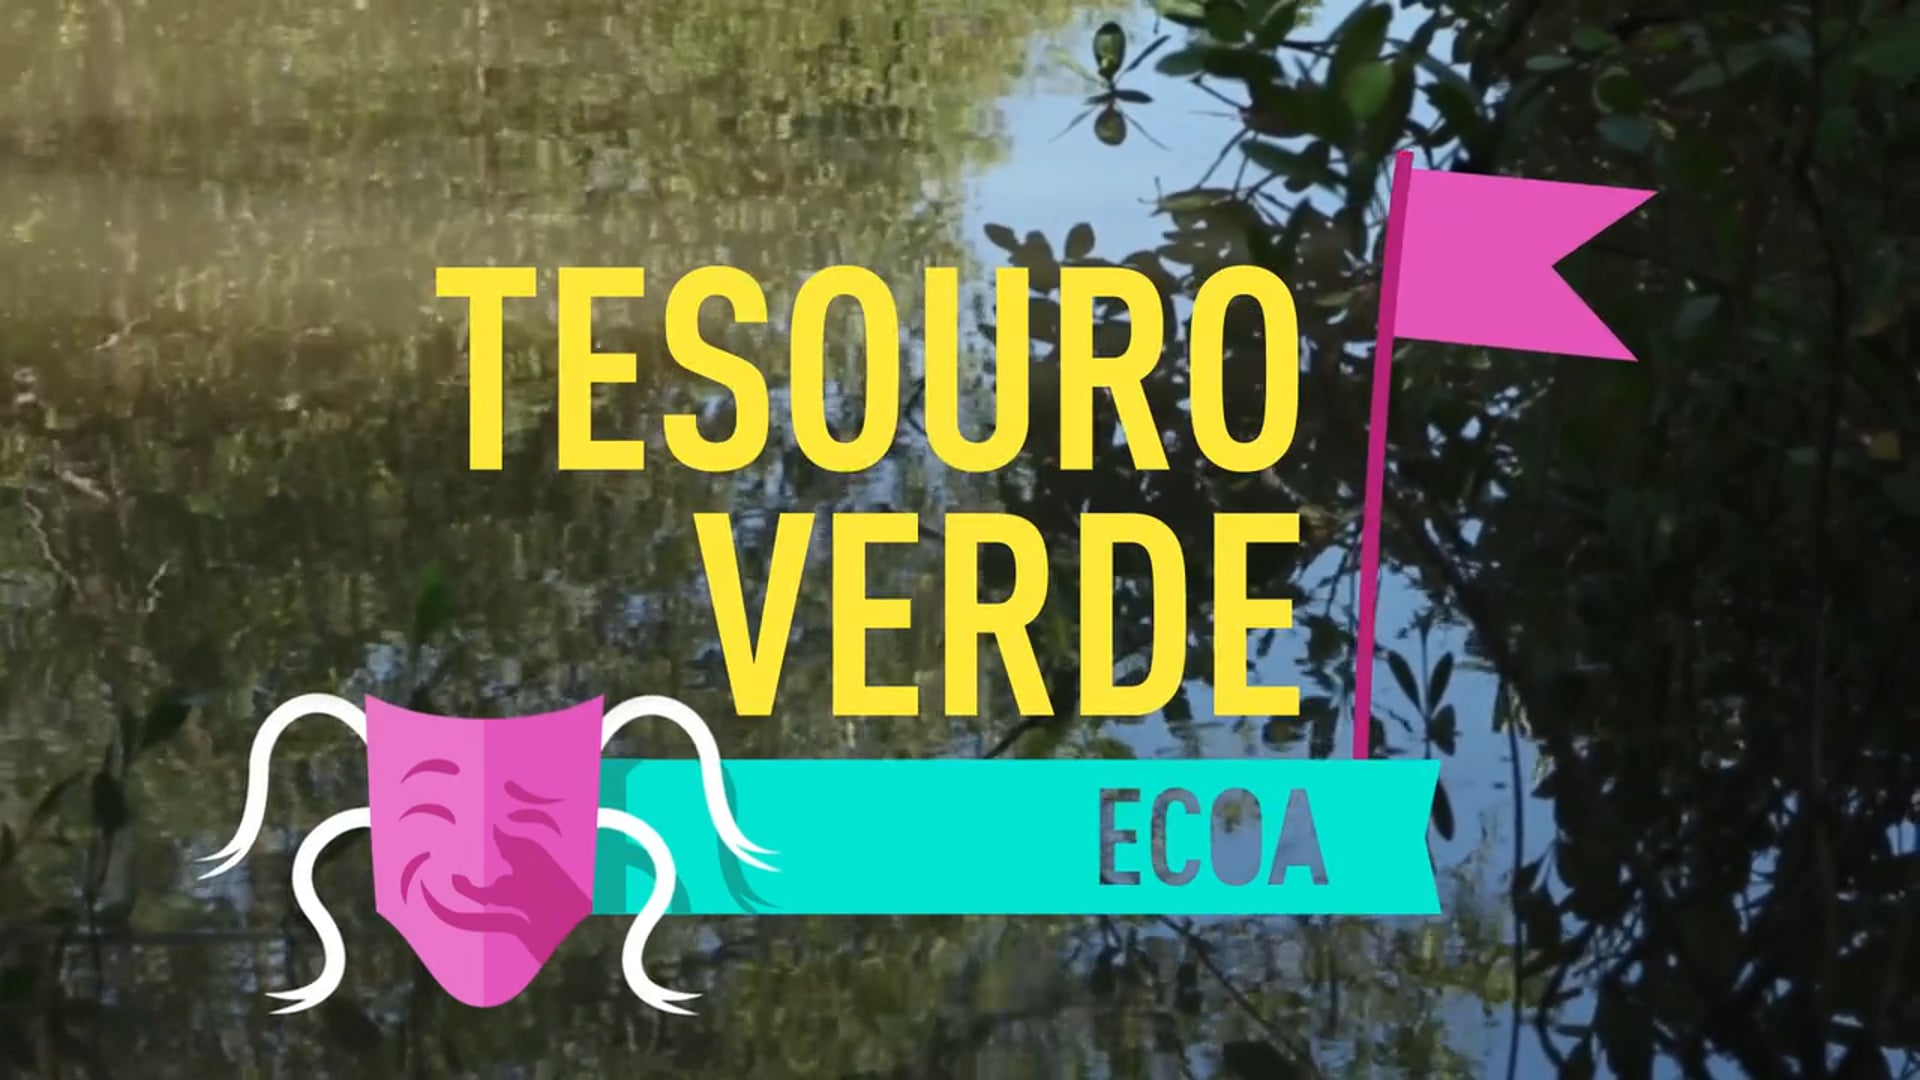 ECOA: Tesouro Verde (São Luís, MA)